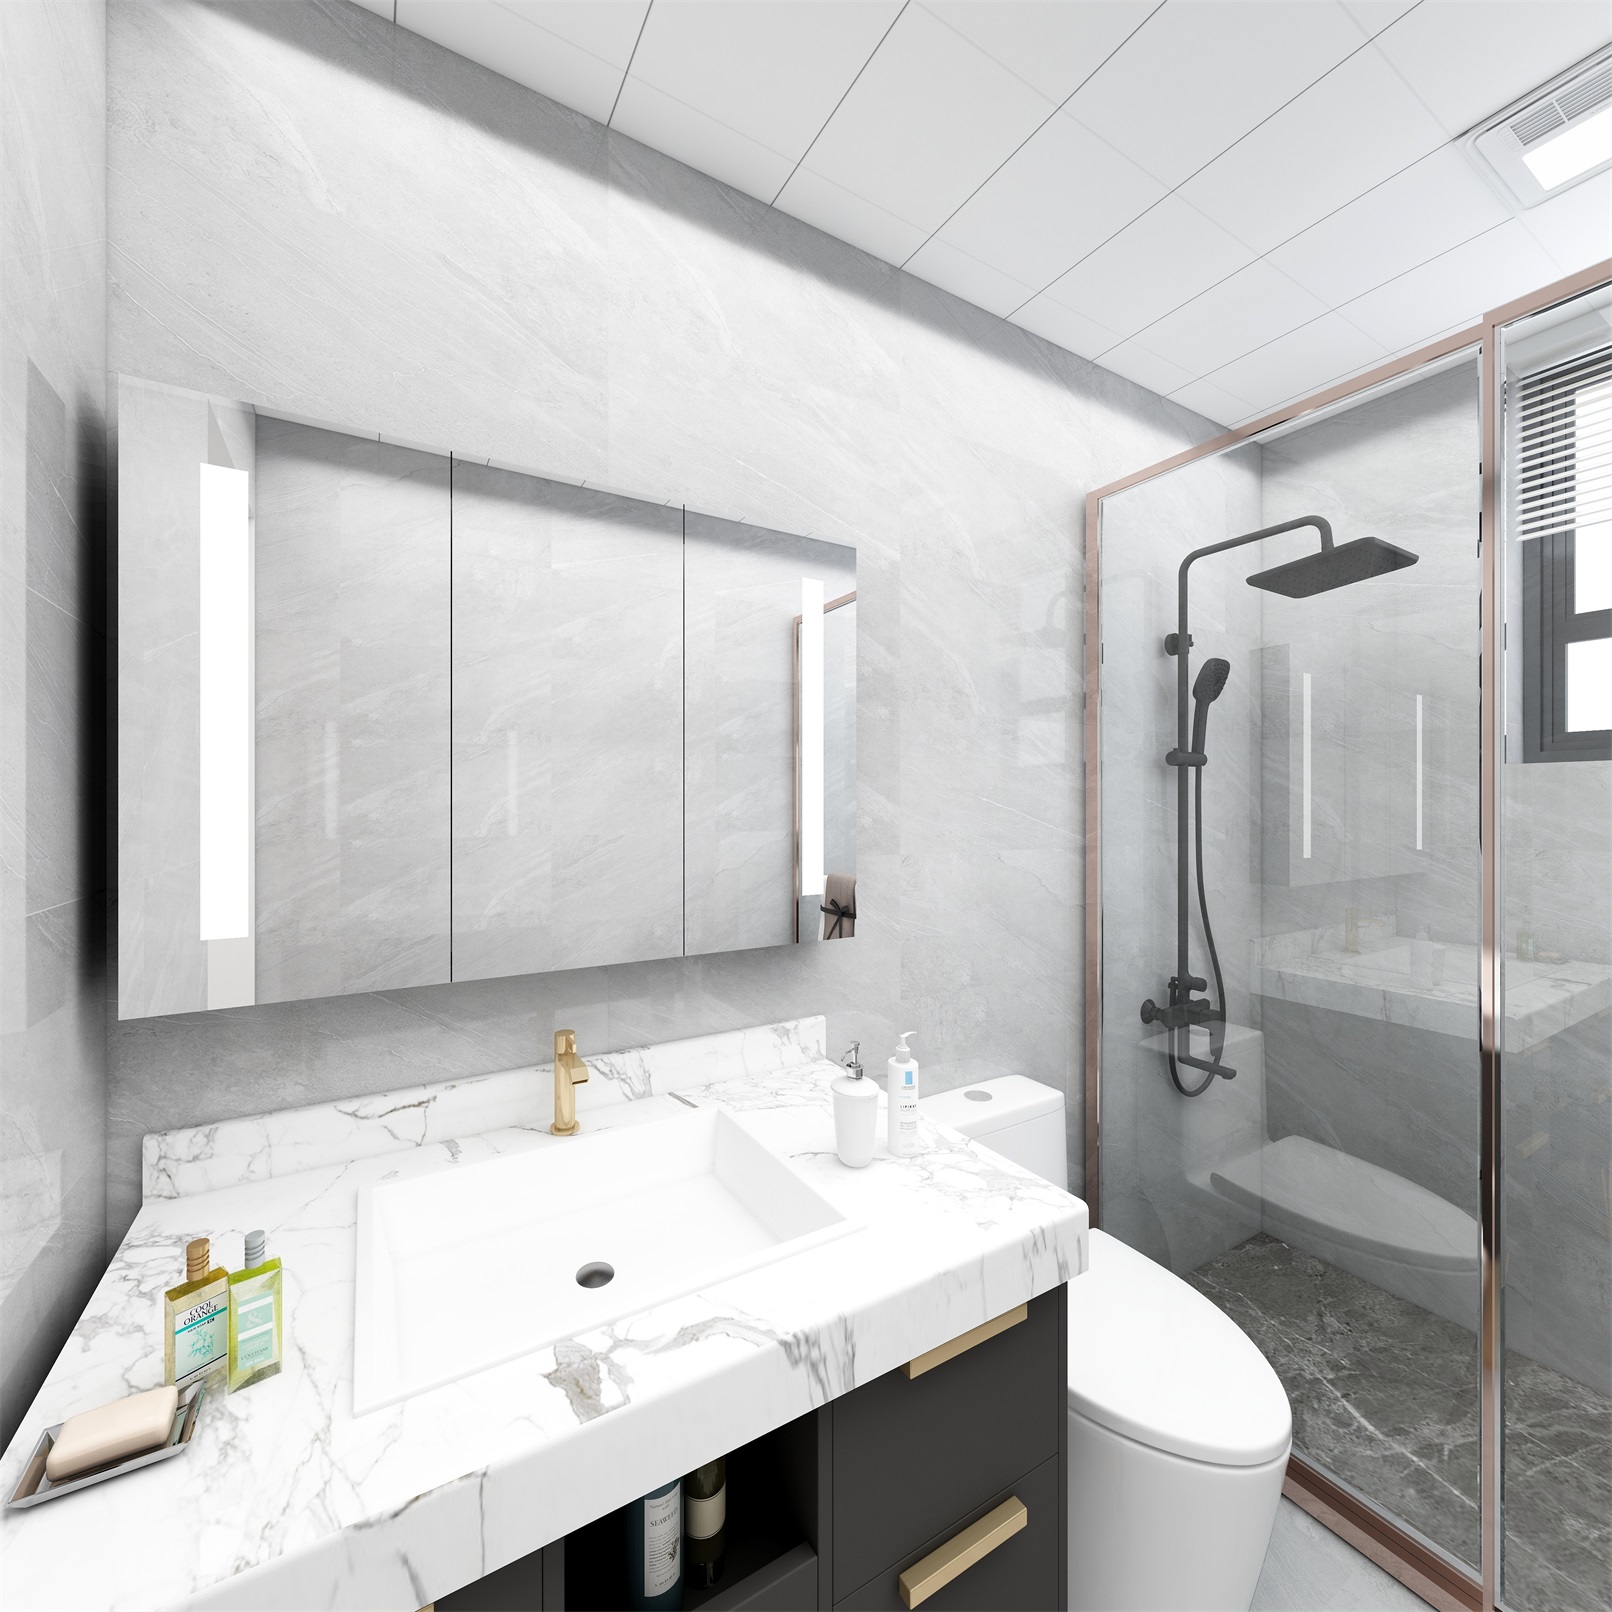 卫浴空间巧妙利用空间，干湿分区合理，美观且实用，凸显出业主品味。